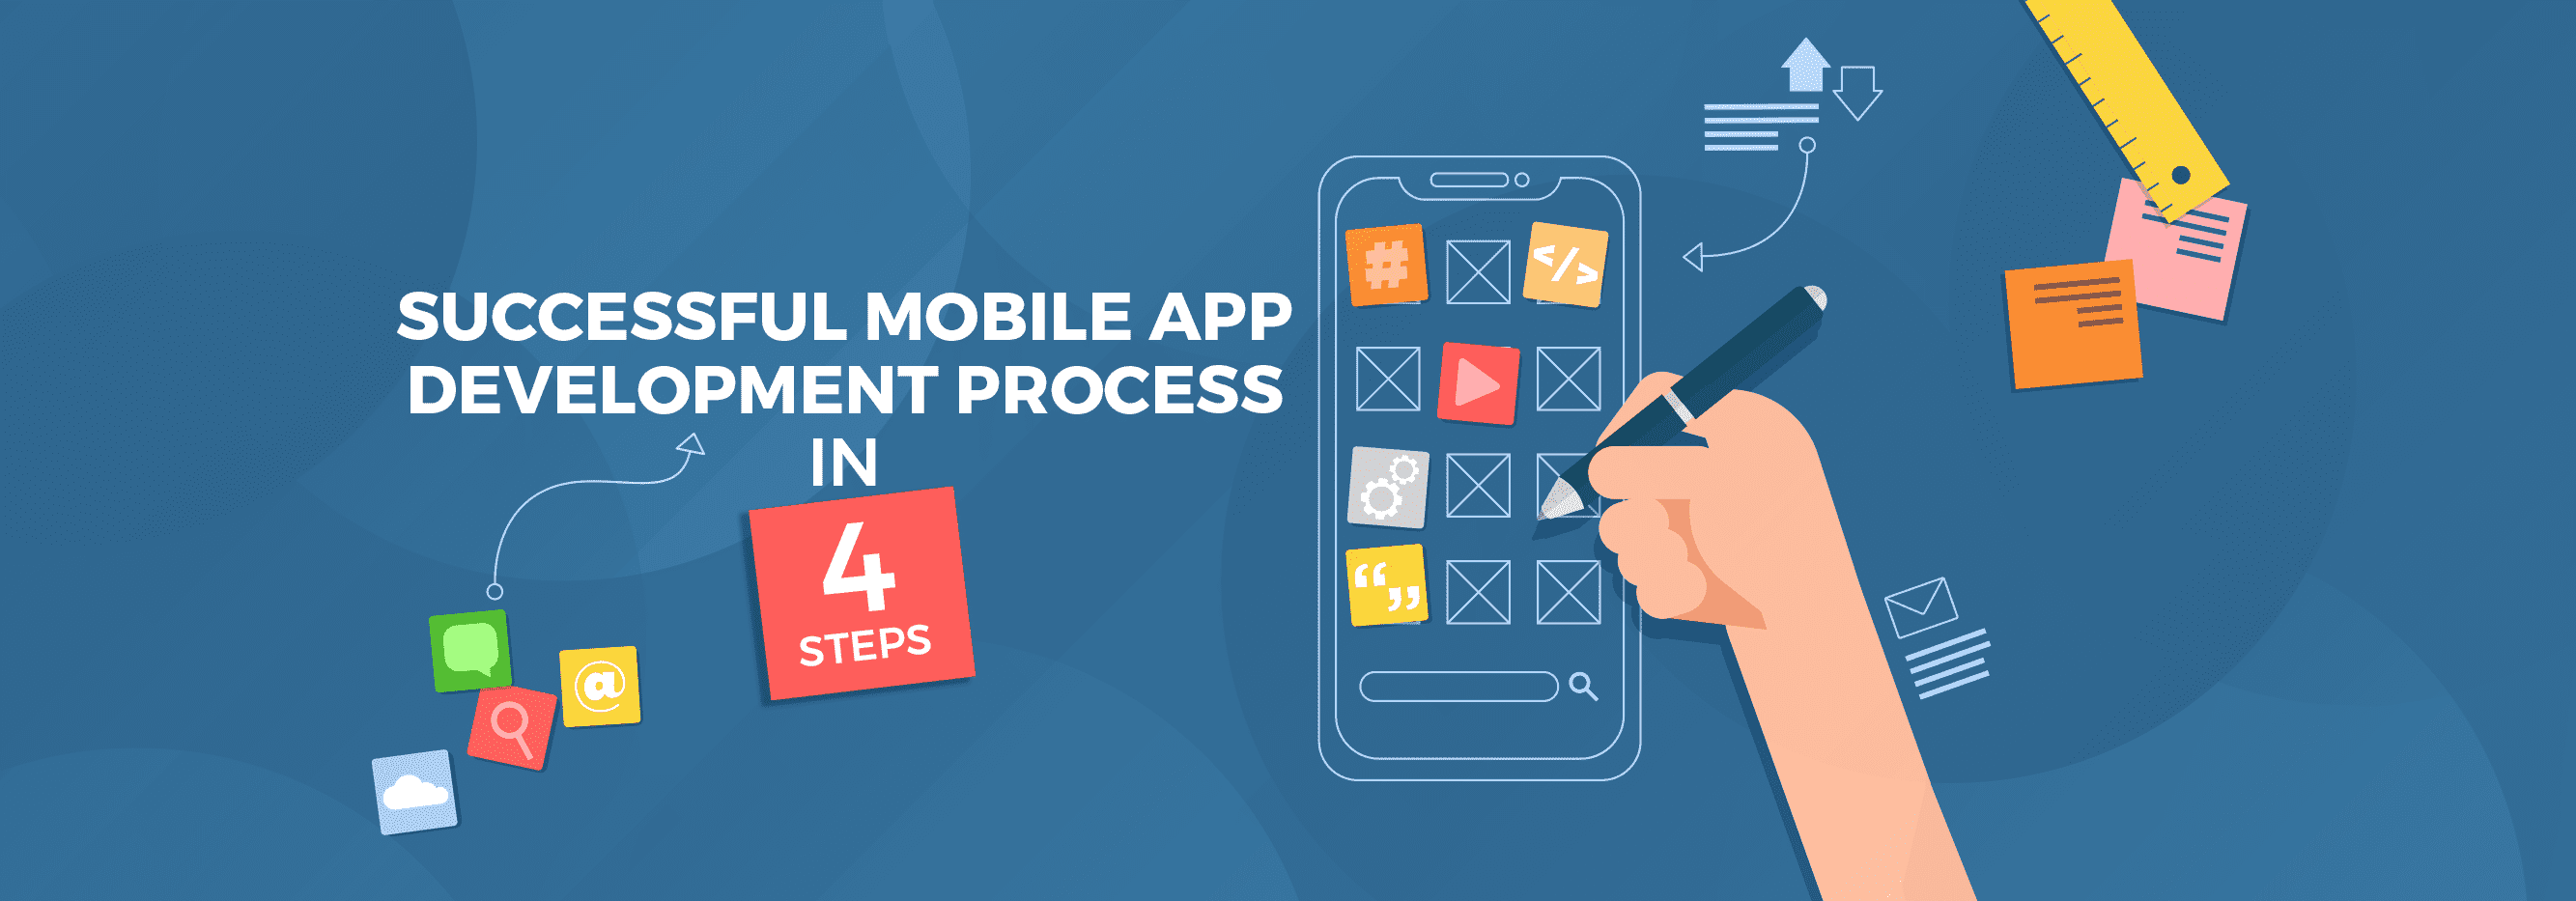 Successful Mobile App Development Process